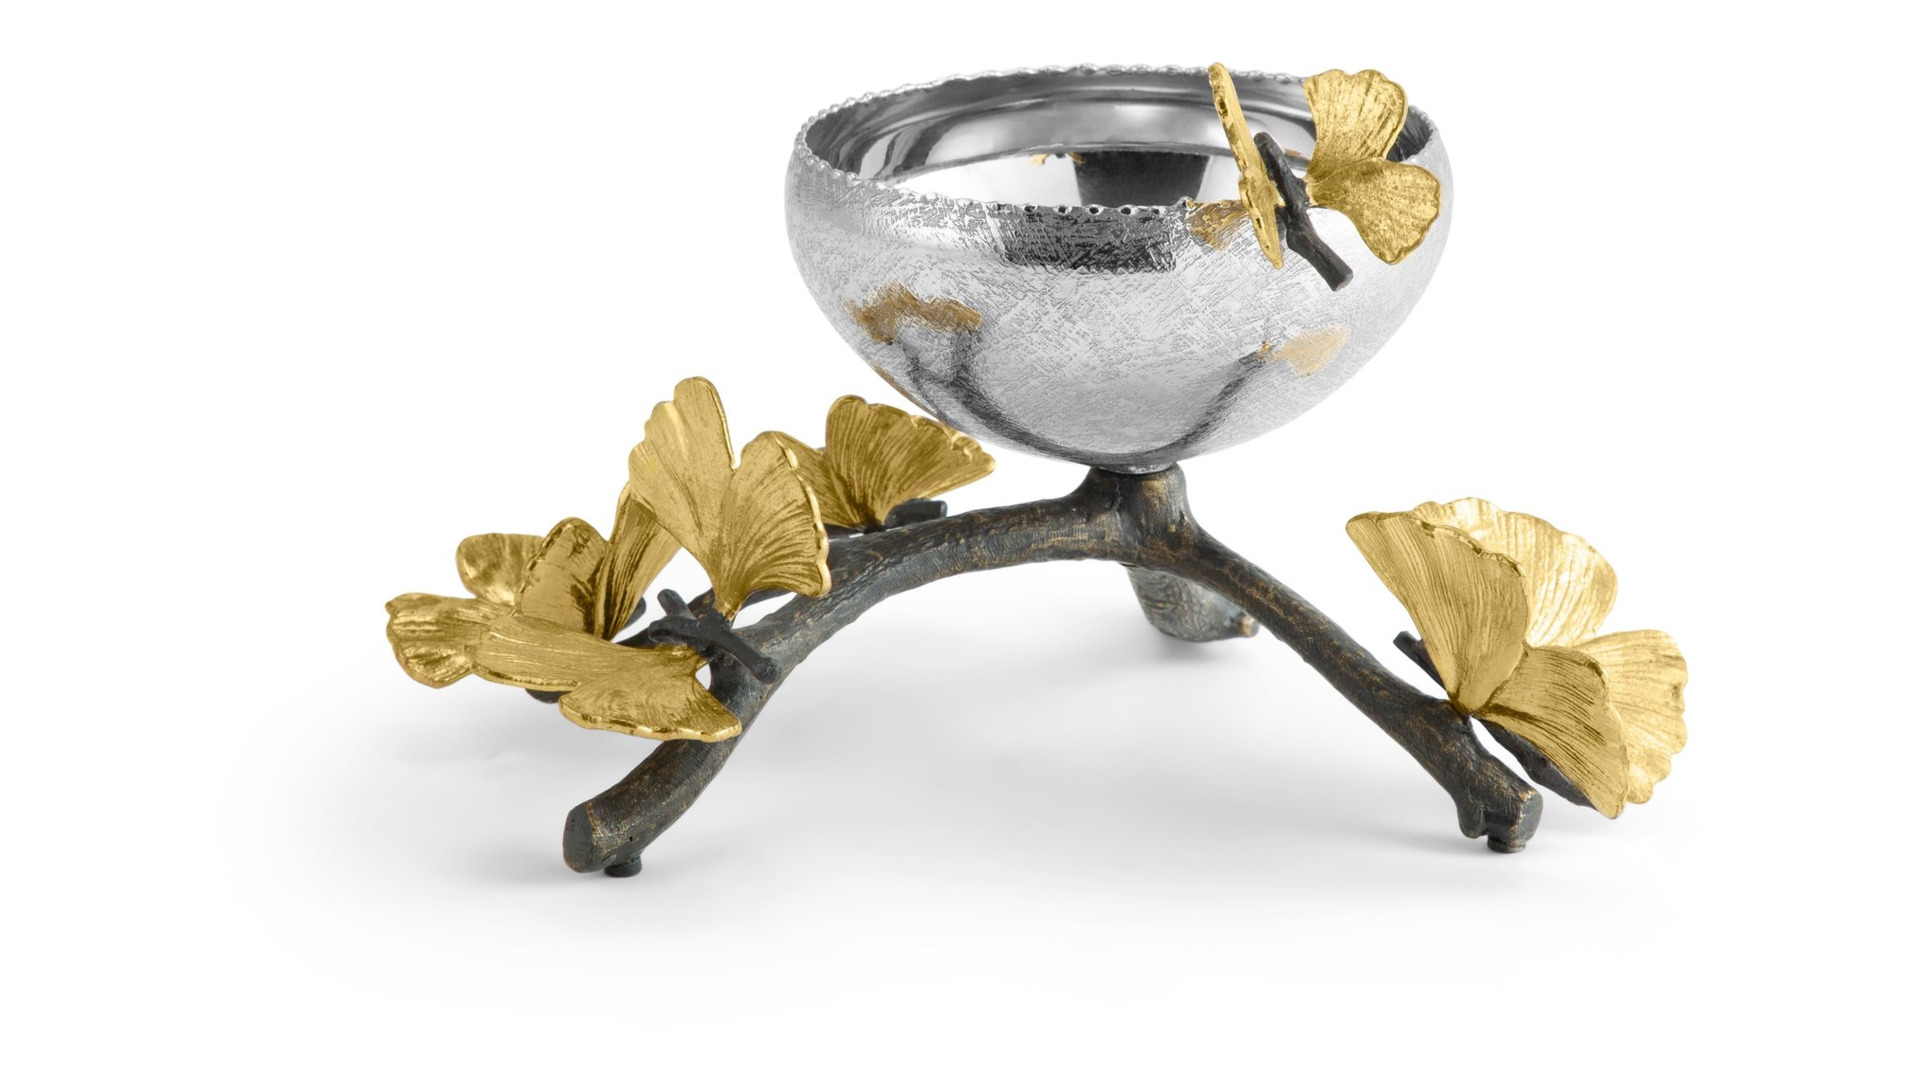 Чаша для орешков Michael Aram Бабочки гинкго 13 см, сталь нержавеющая